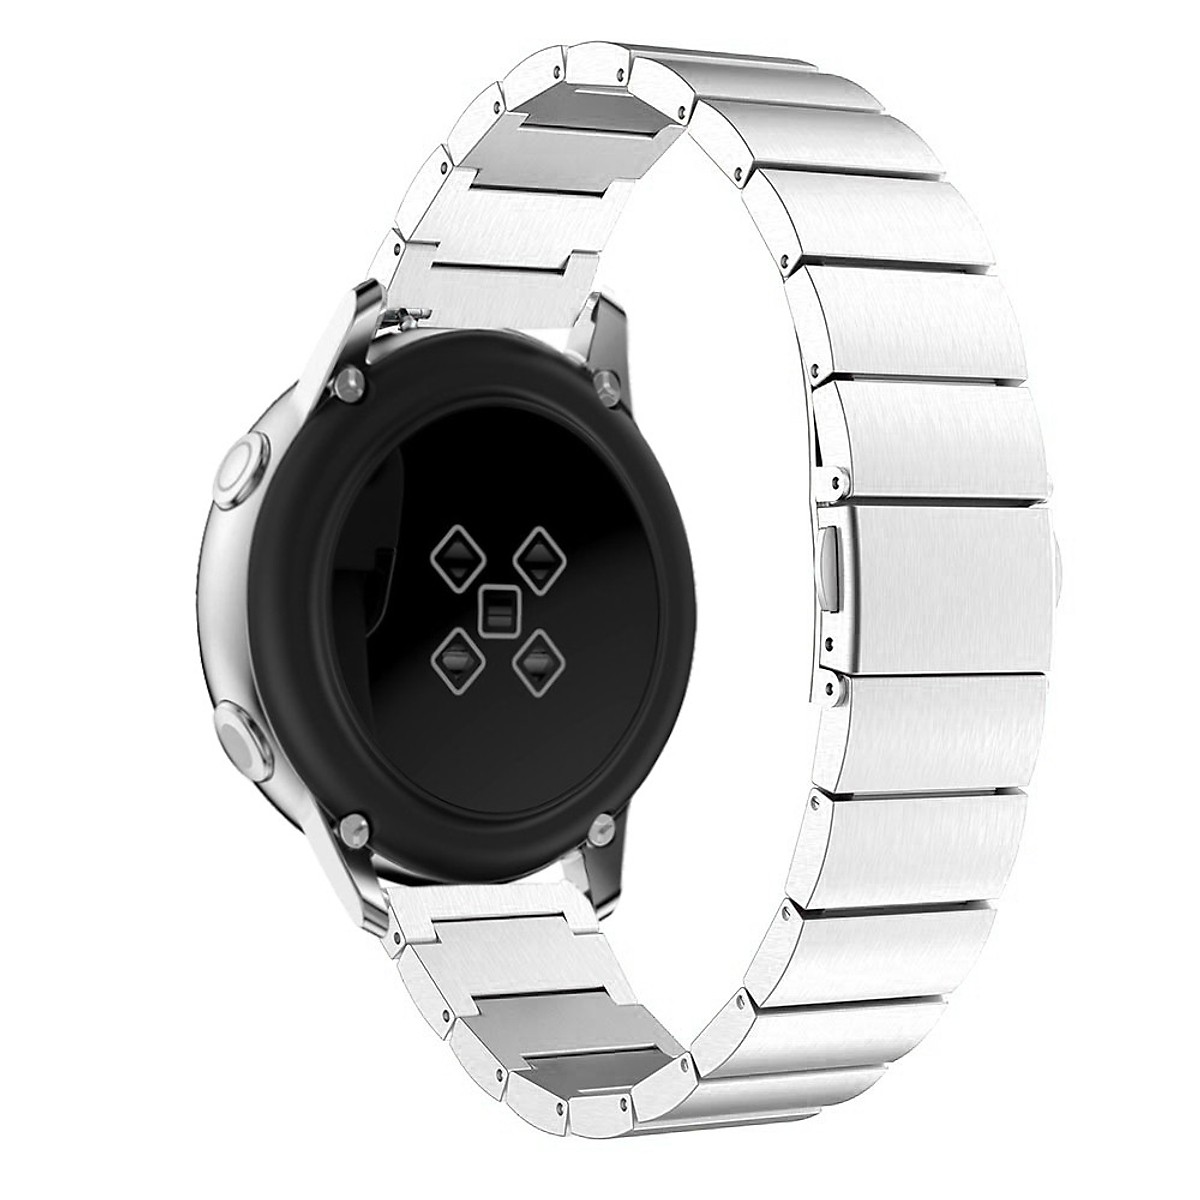 Dây thép nguyên khối cho đồng hồ Galaxy Watch Active 2, Galaxy Watch Active, Galaxy Watch 42 (20mm)